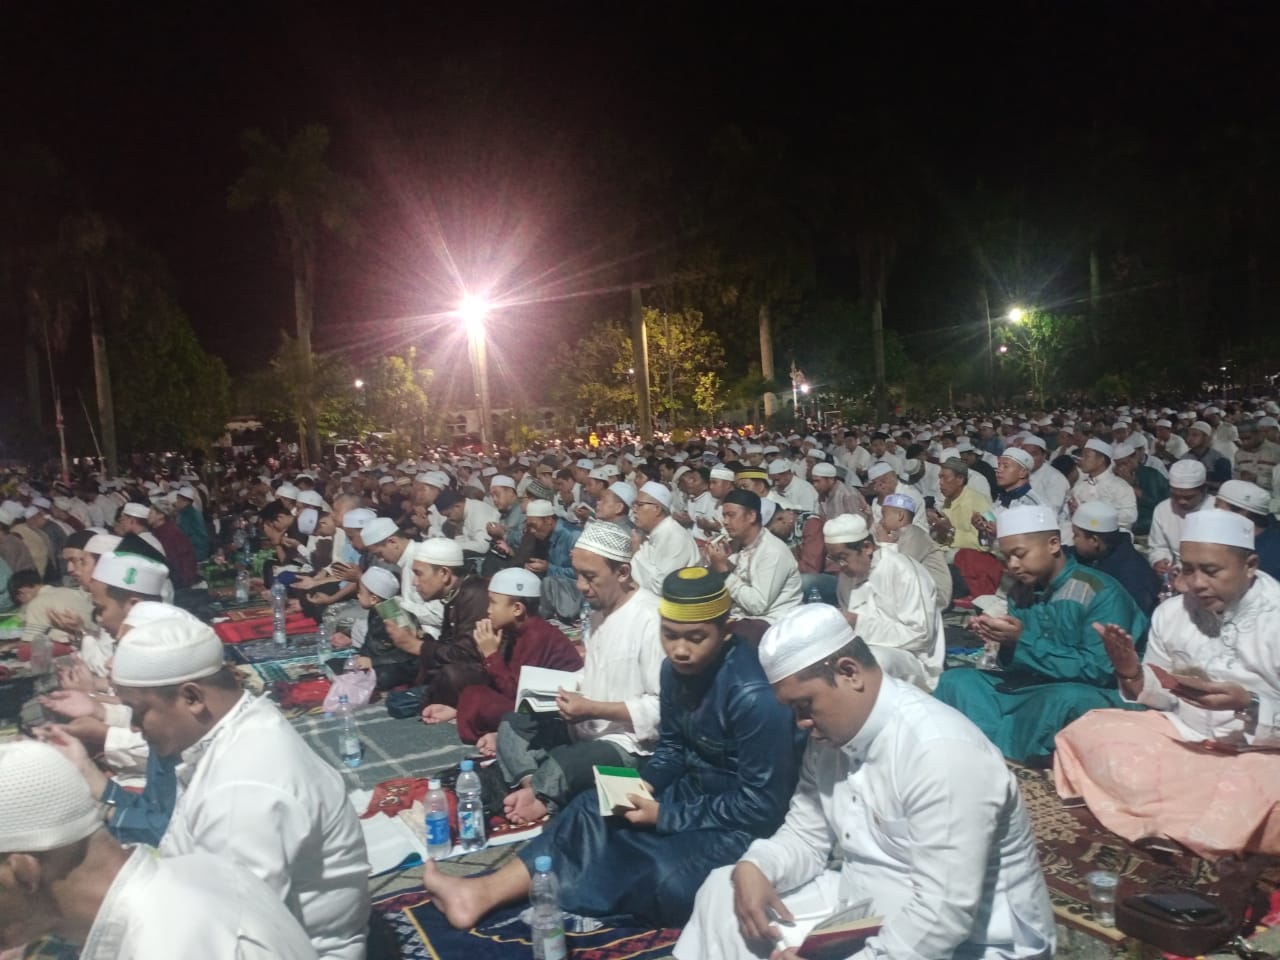 Jamaah Malam Nisfu Sya’ban Ramai Lapangan Masjid Sabilal Muhtadin